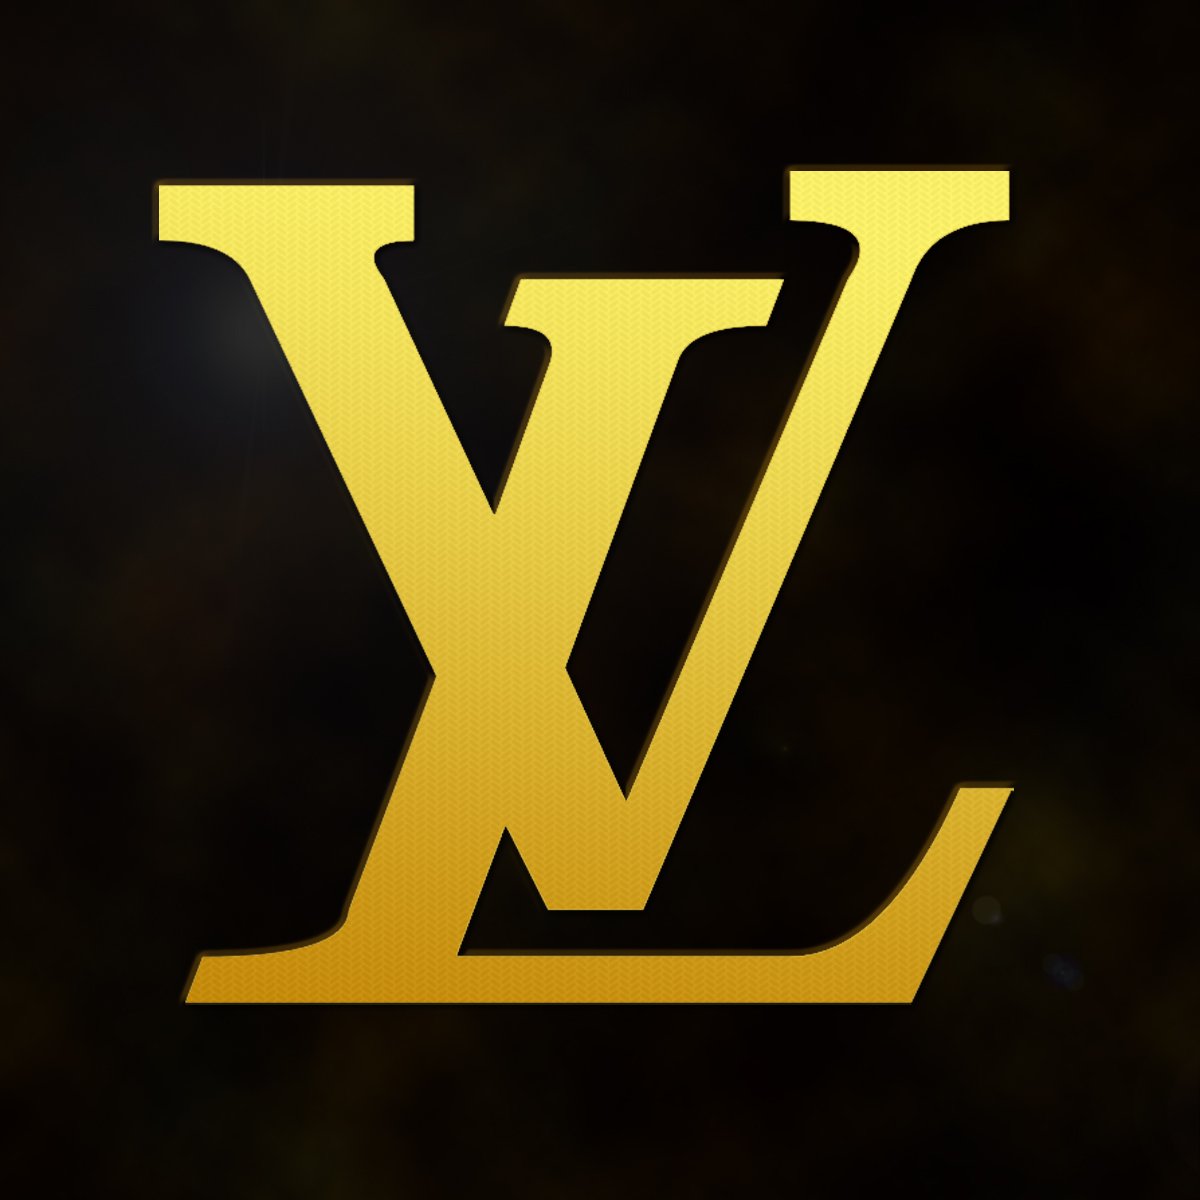 lv中国官网logo图片